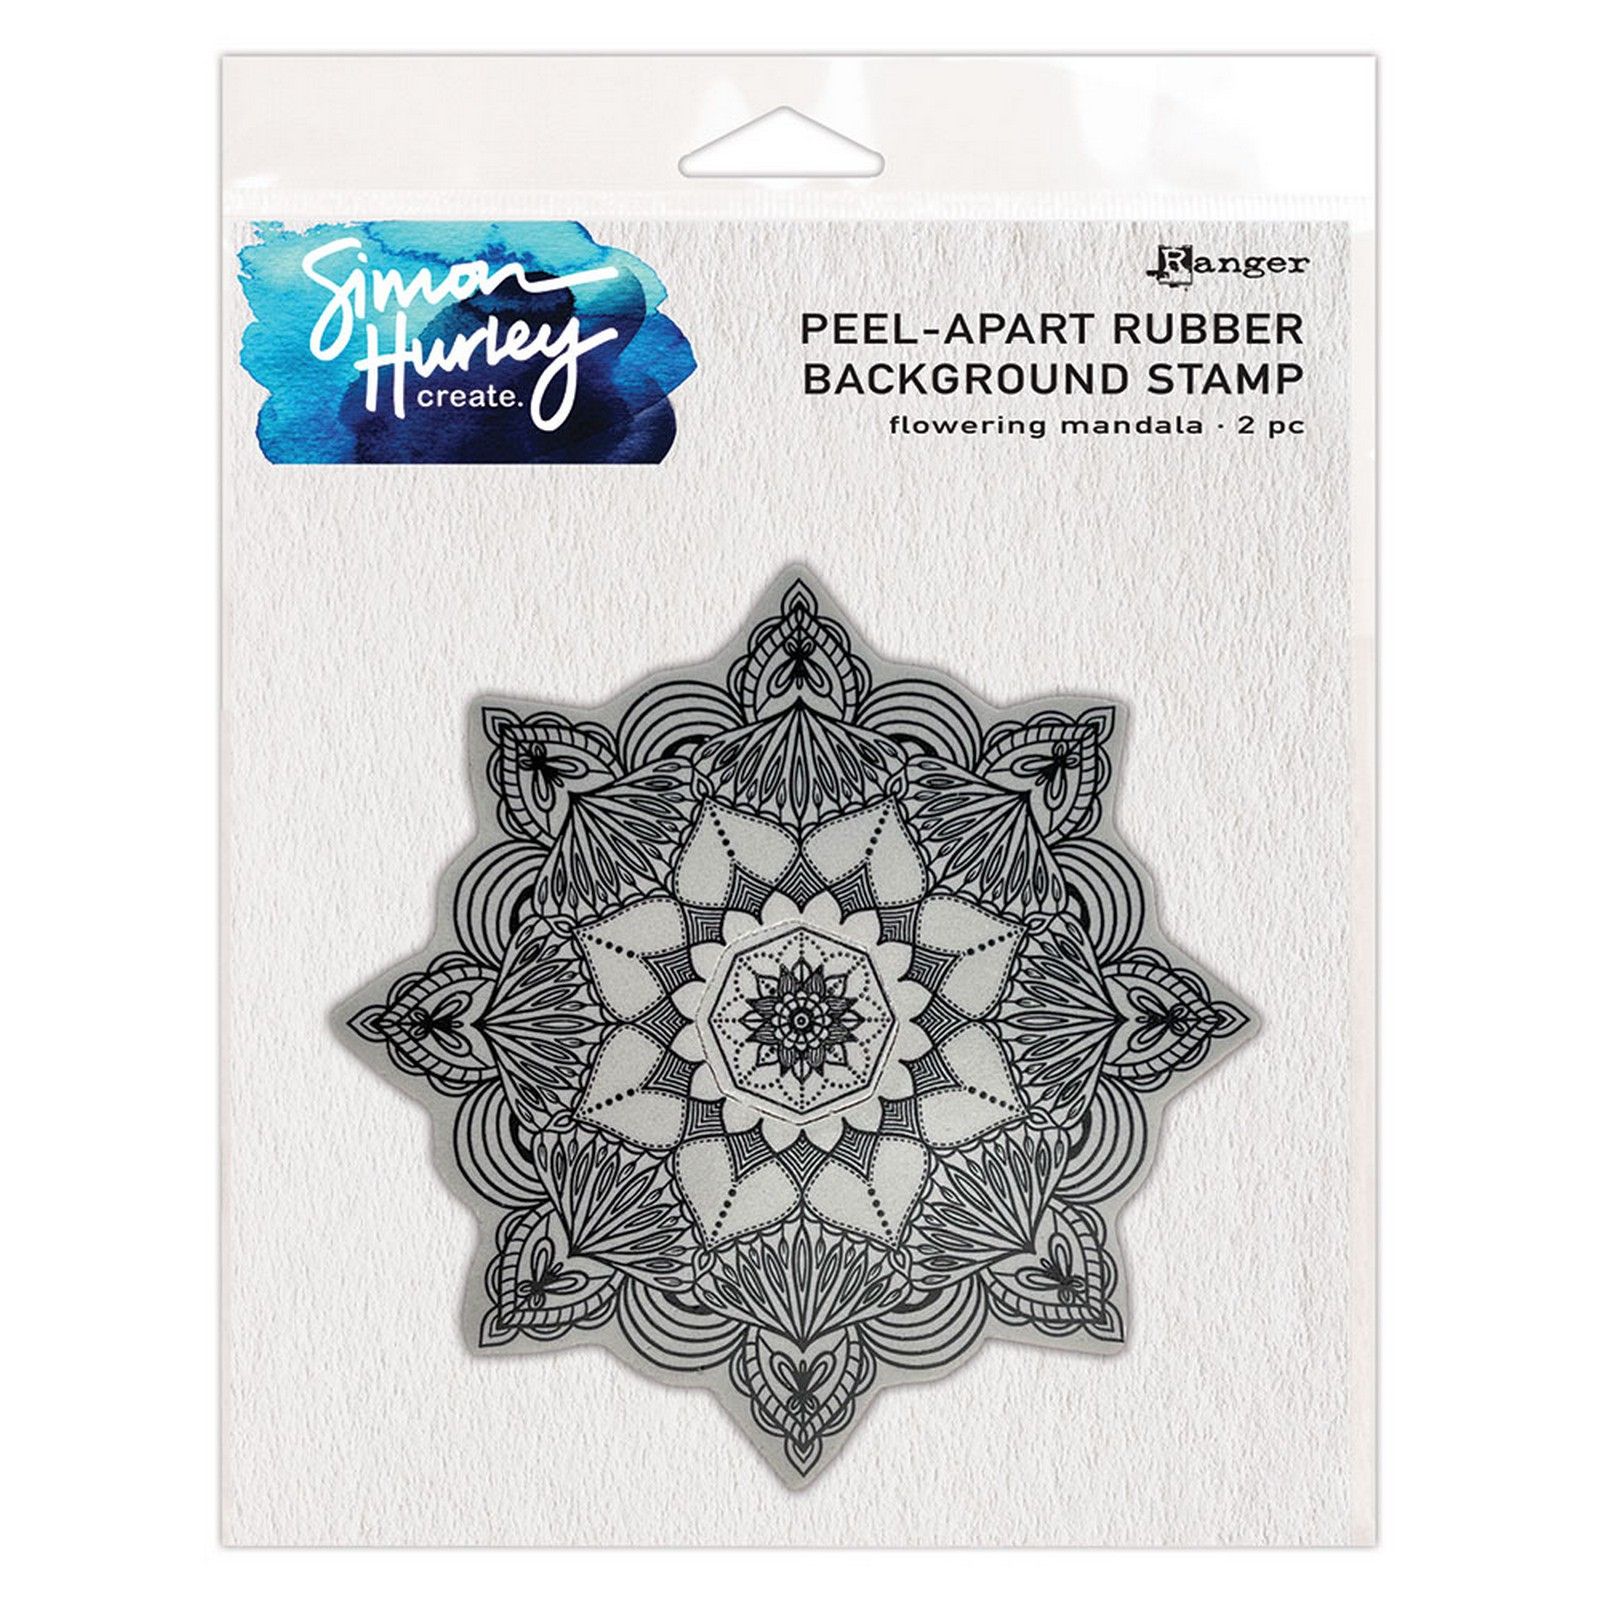 Ranger • Simon Hurley create. Background Stamp Flowering Mandala